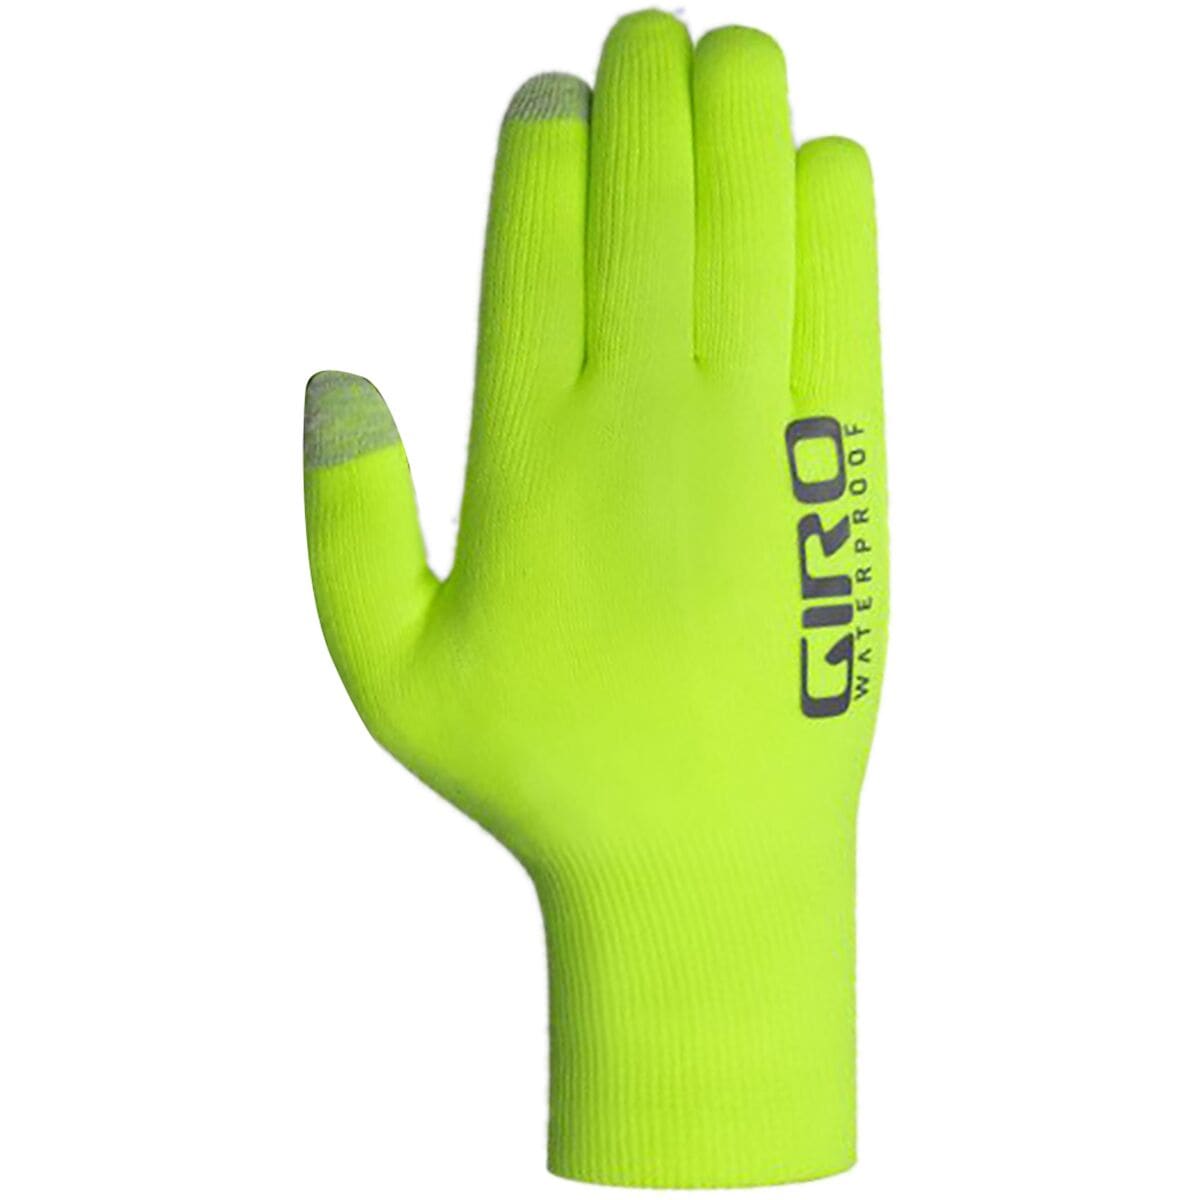 Giro Xnetic H2O Cycling Glove - Men's